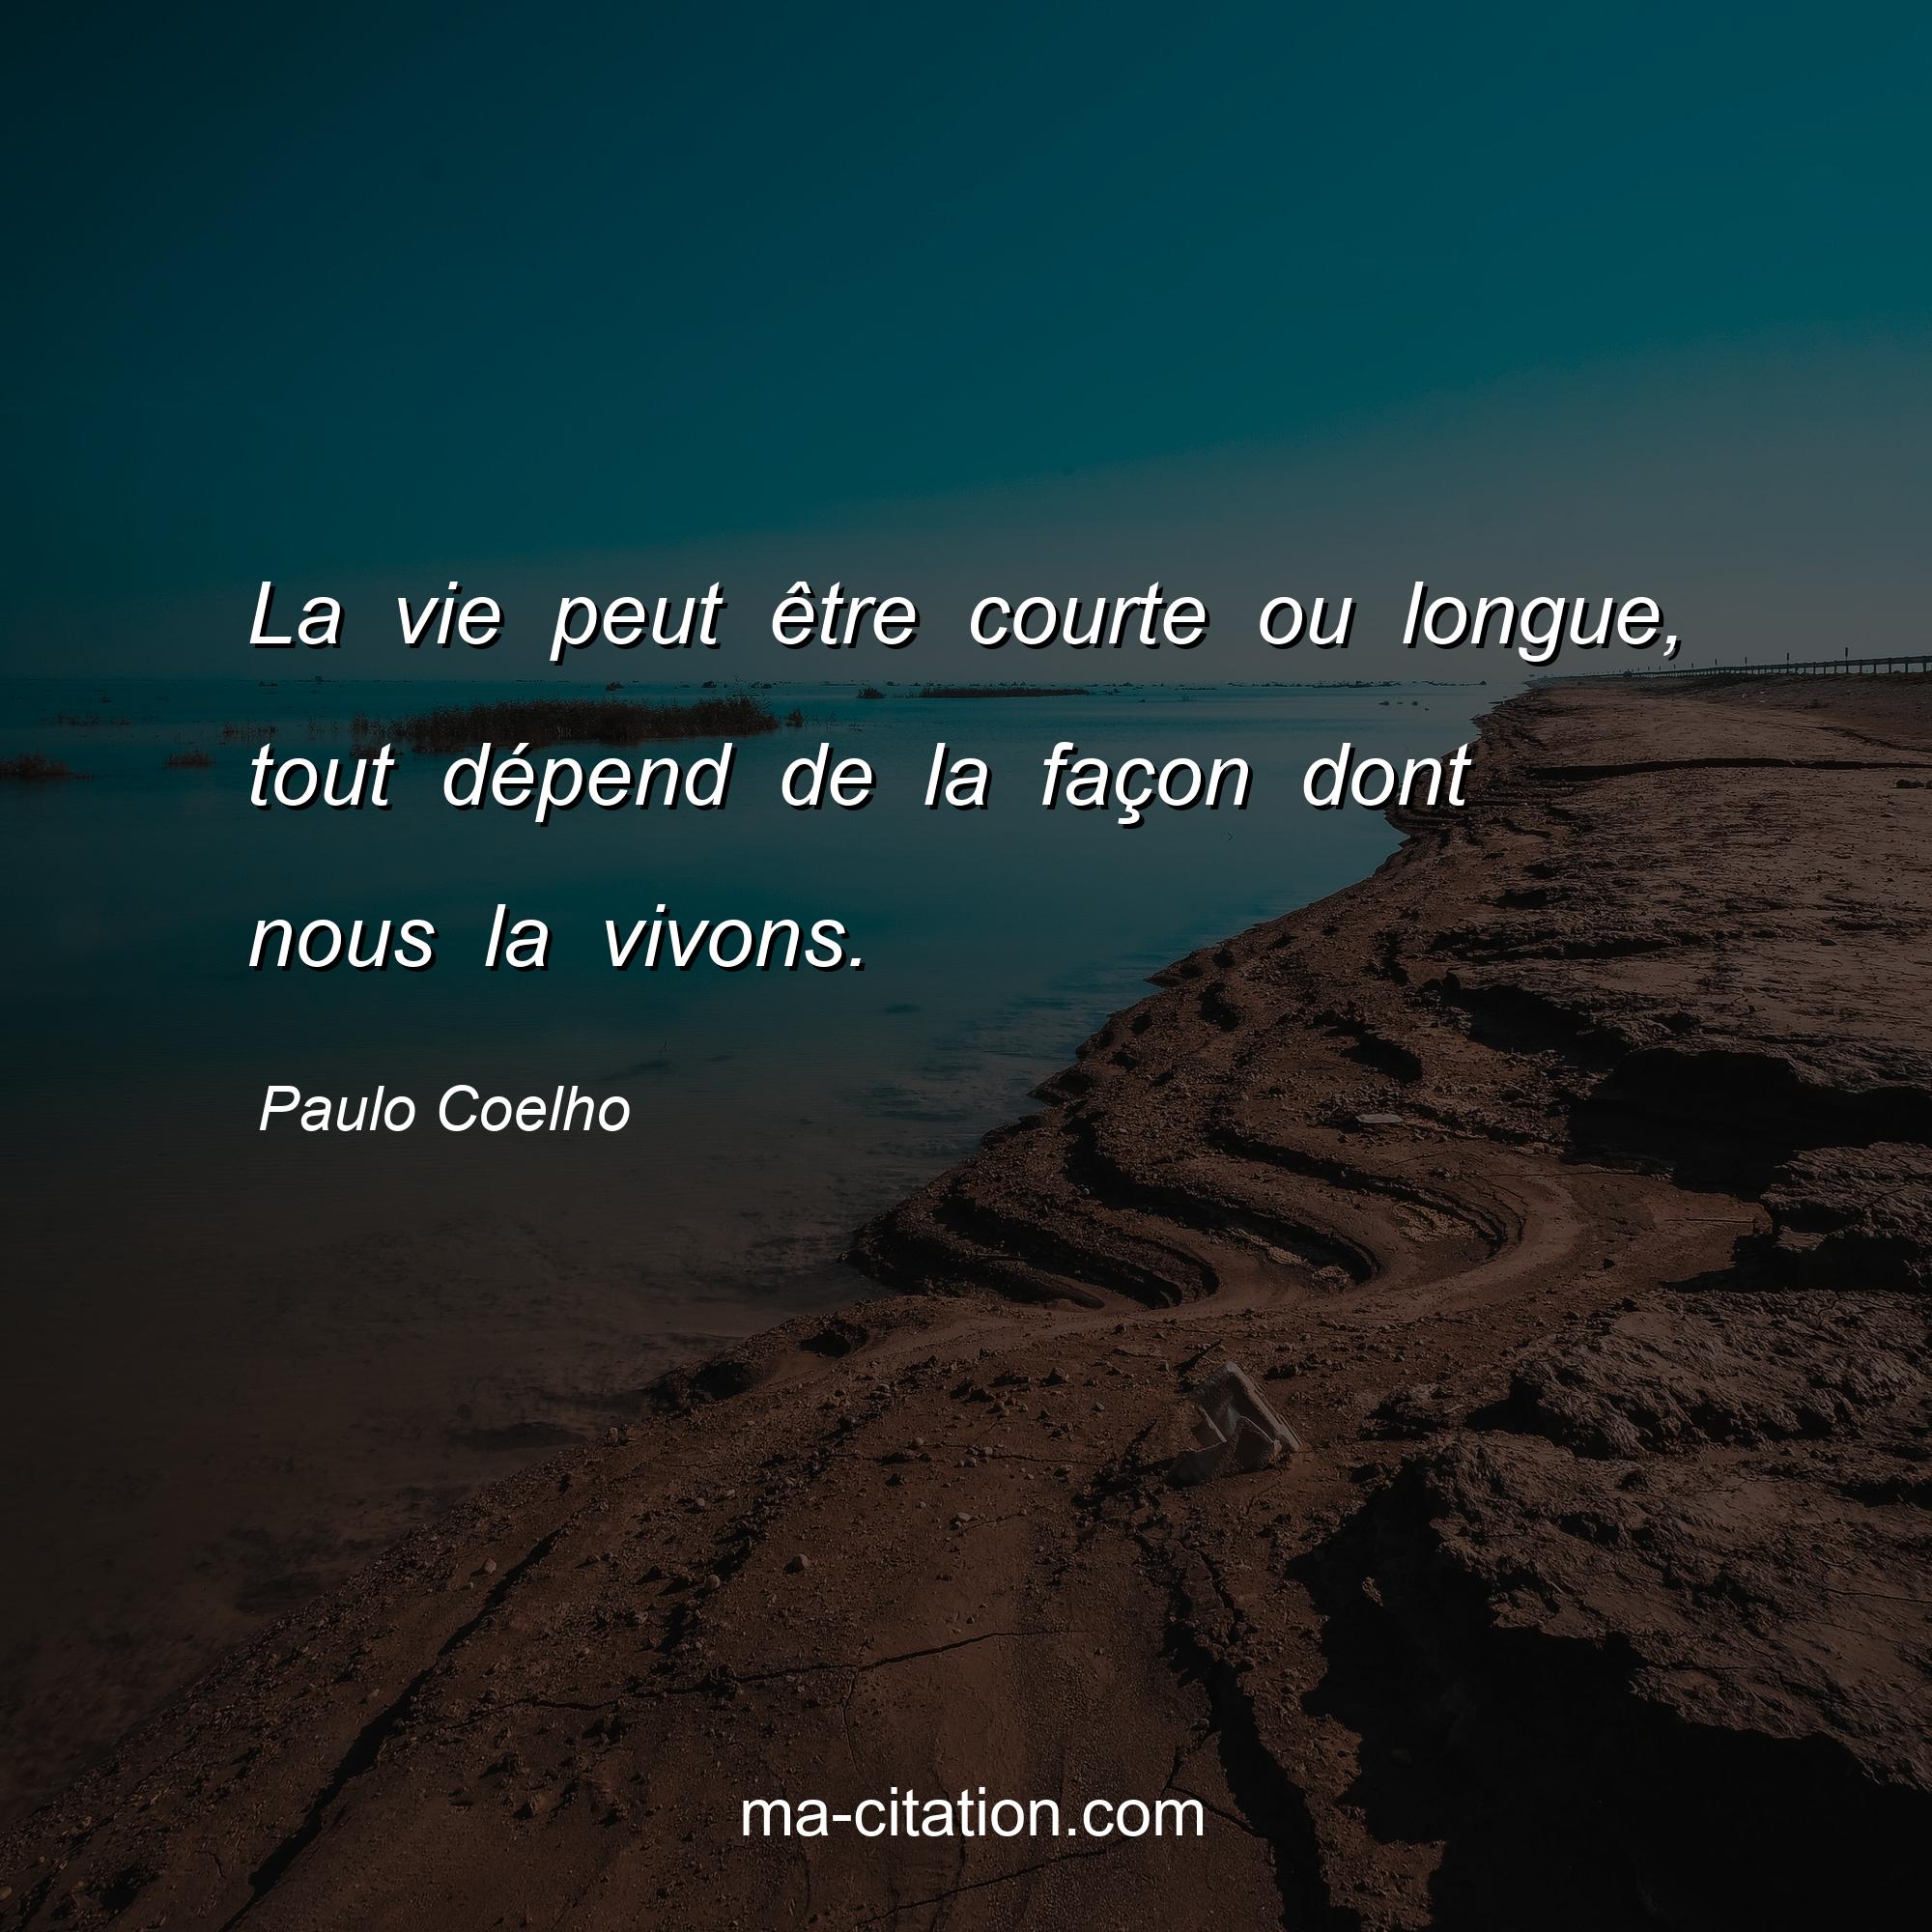 Paulo Coelho : La vie peut être courte ou longue, tout dépend de la façon dont nous la vivons.